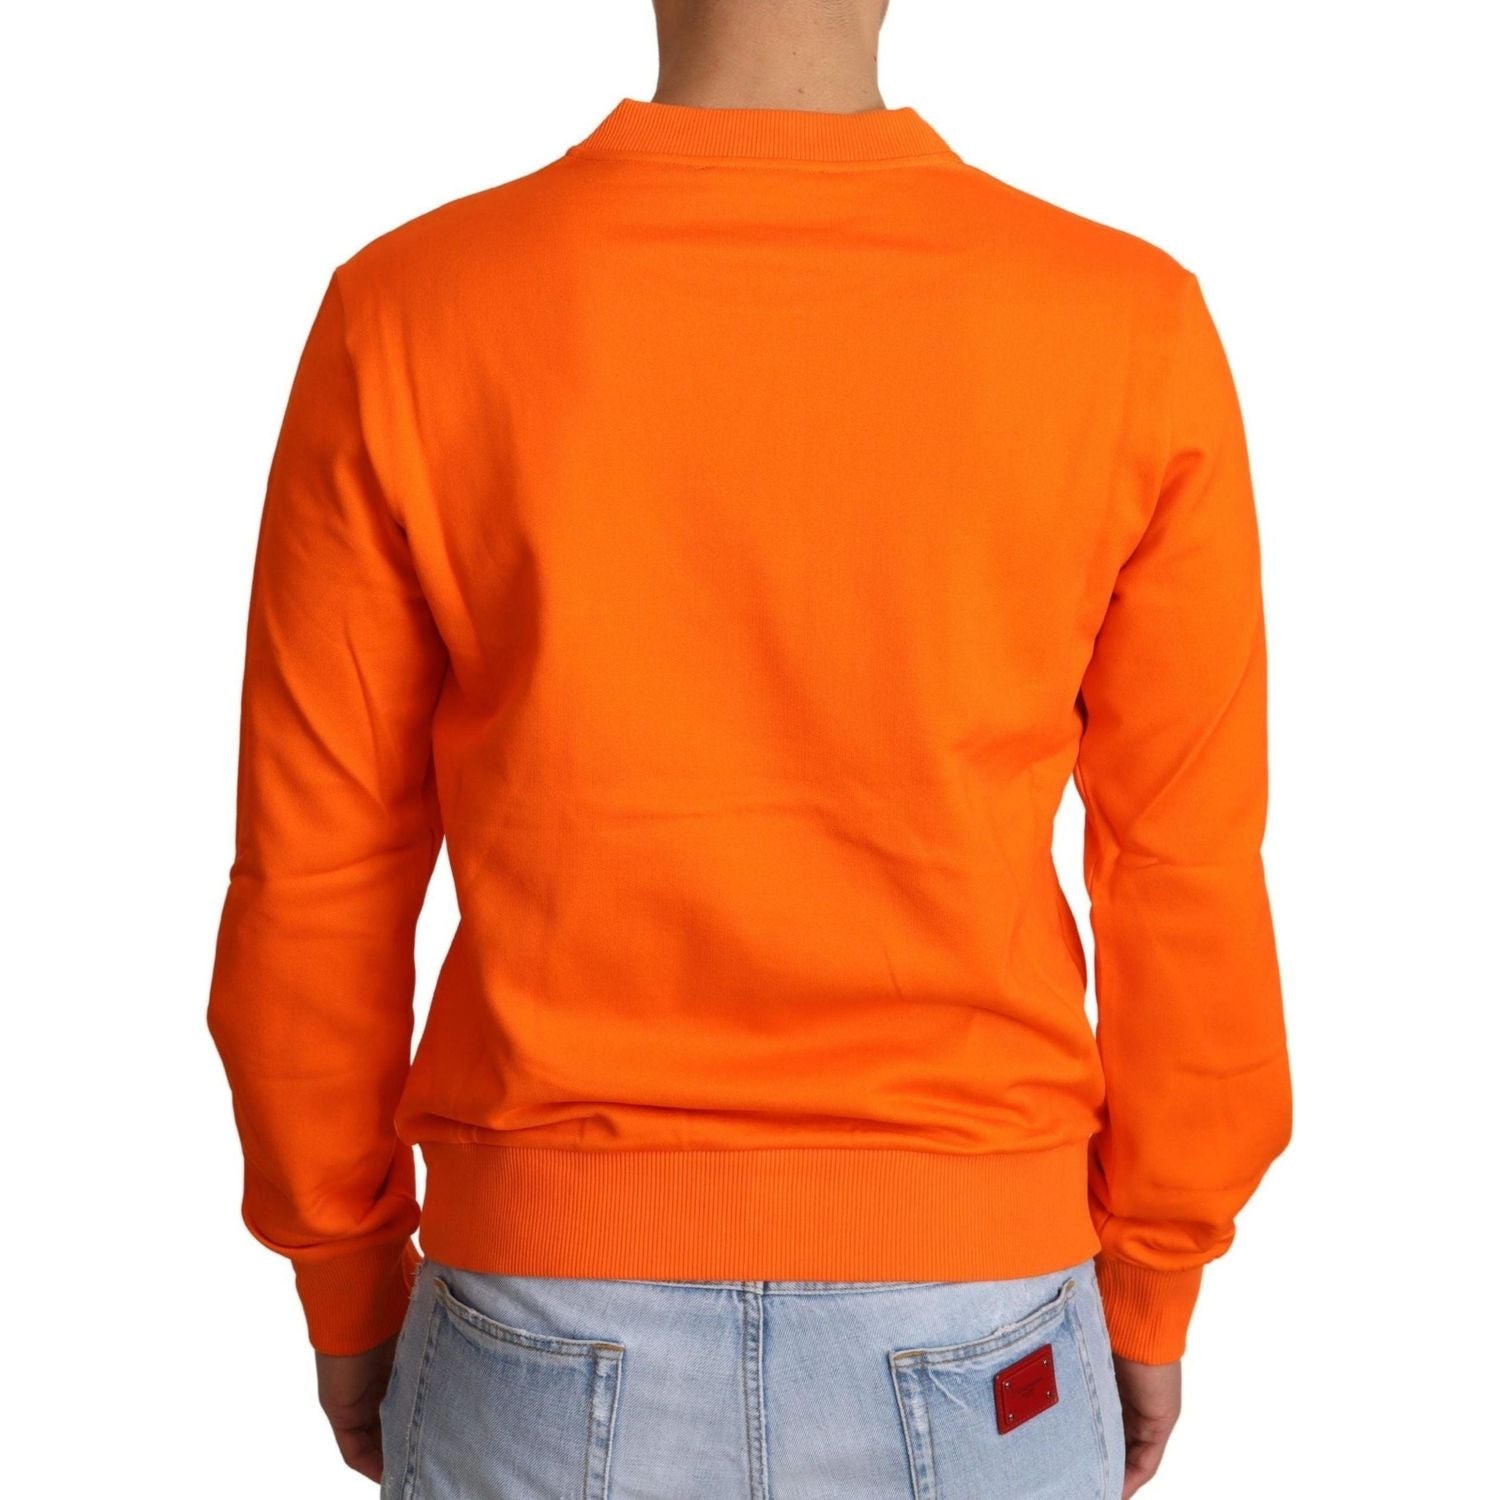 Dolce & Gabbana | Orange King Ceasar Cotton Pullover Sweater | 329.00 - McRichard Designer Brands